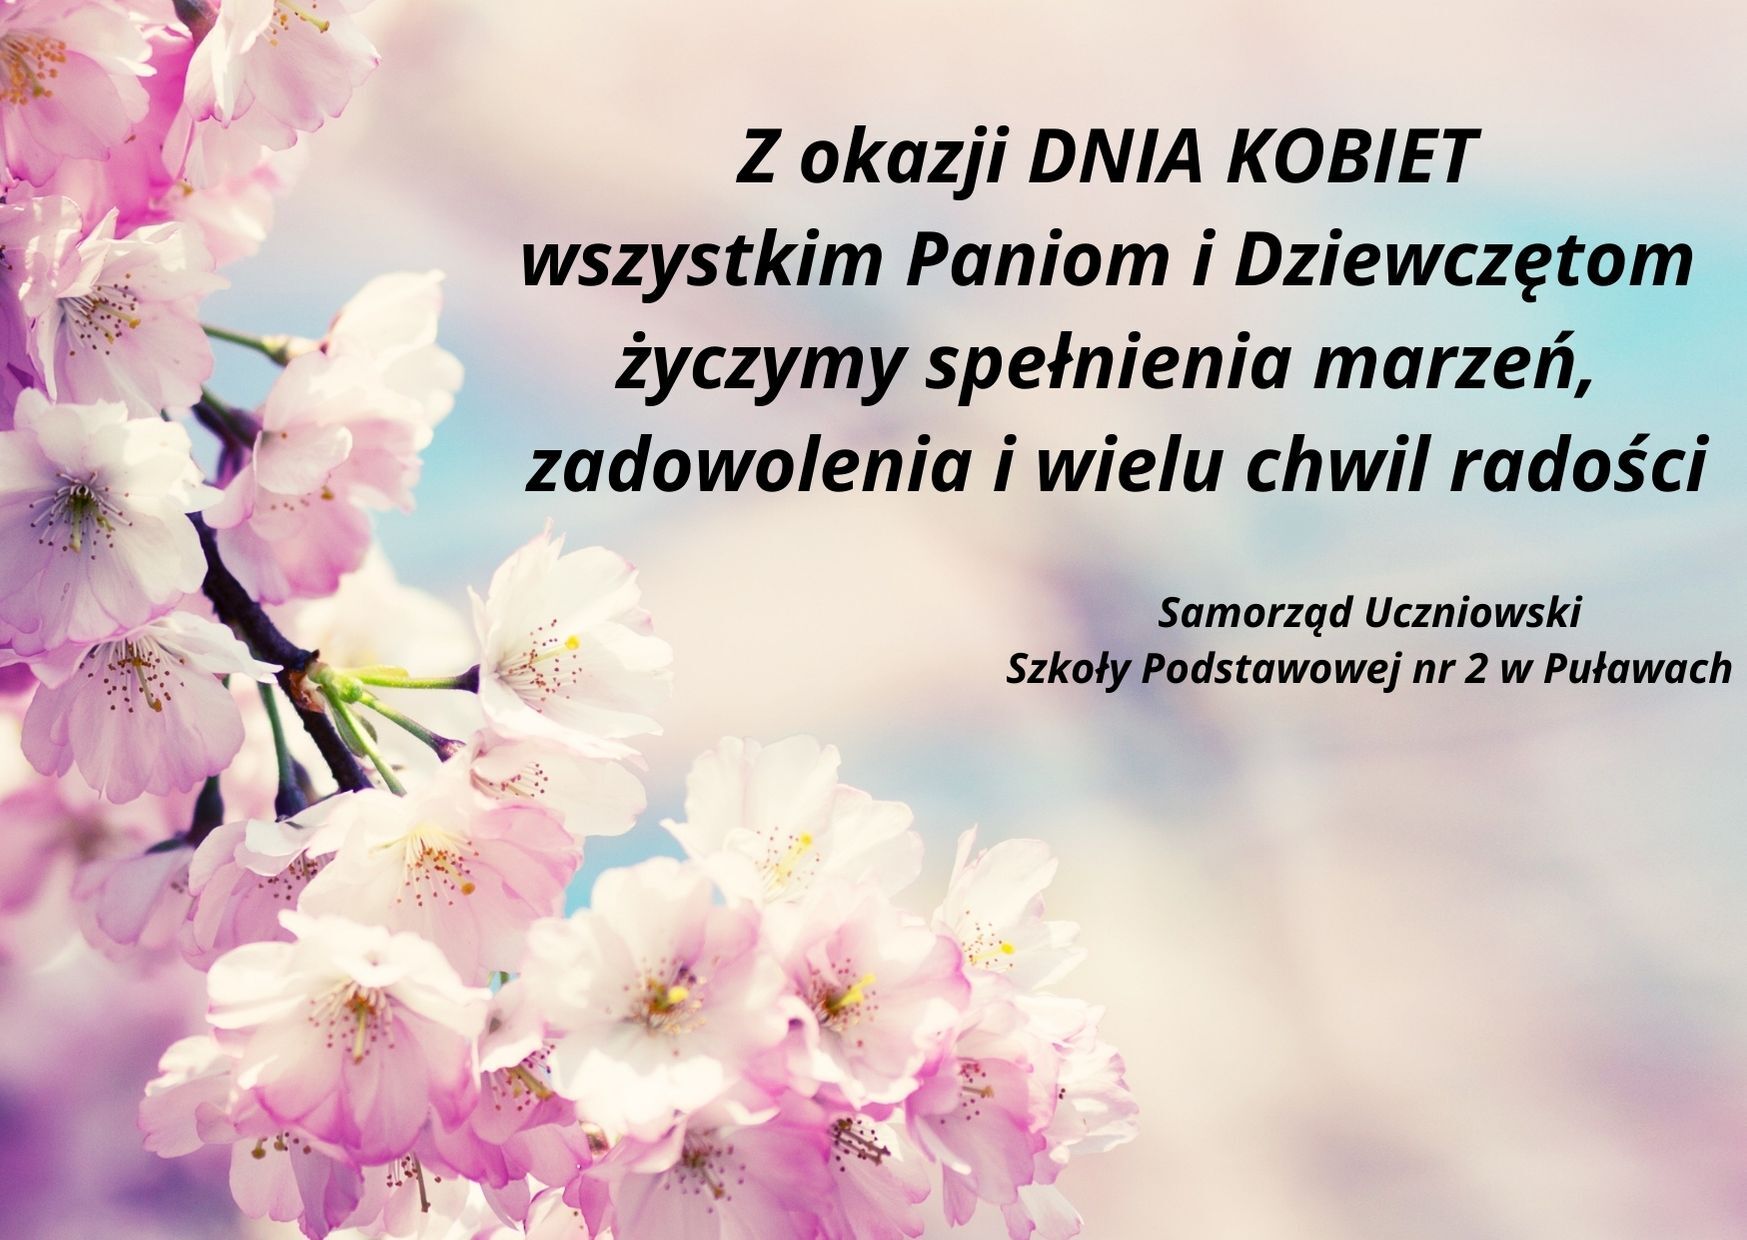 Życzenia Samorządu Uczniowskiego z okazji Dnia Kobiet.jpg